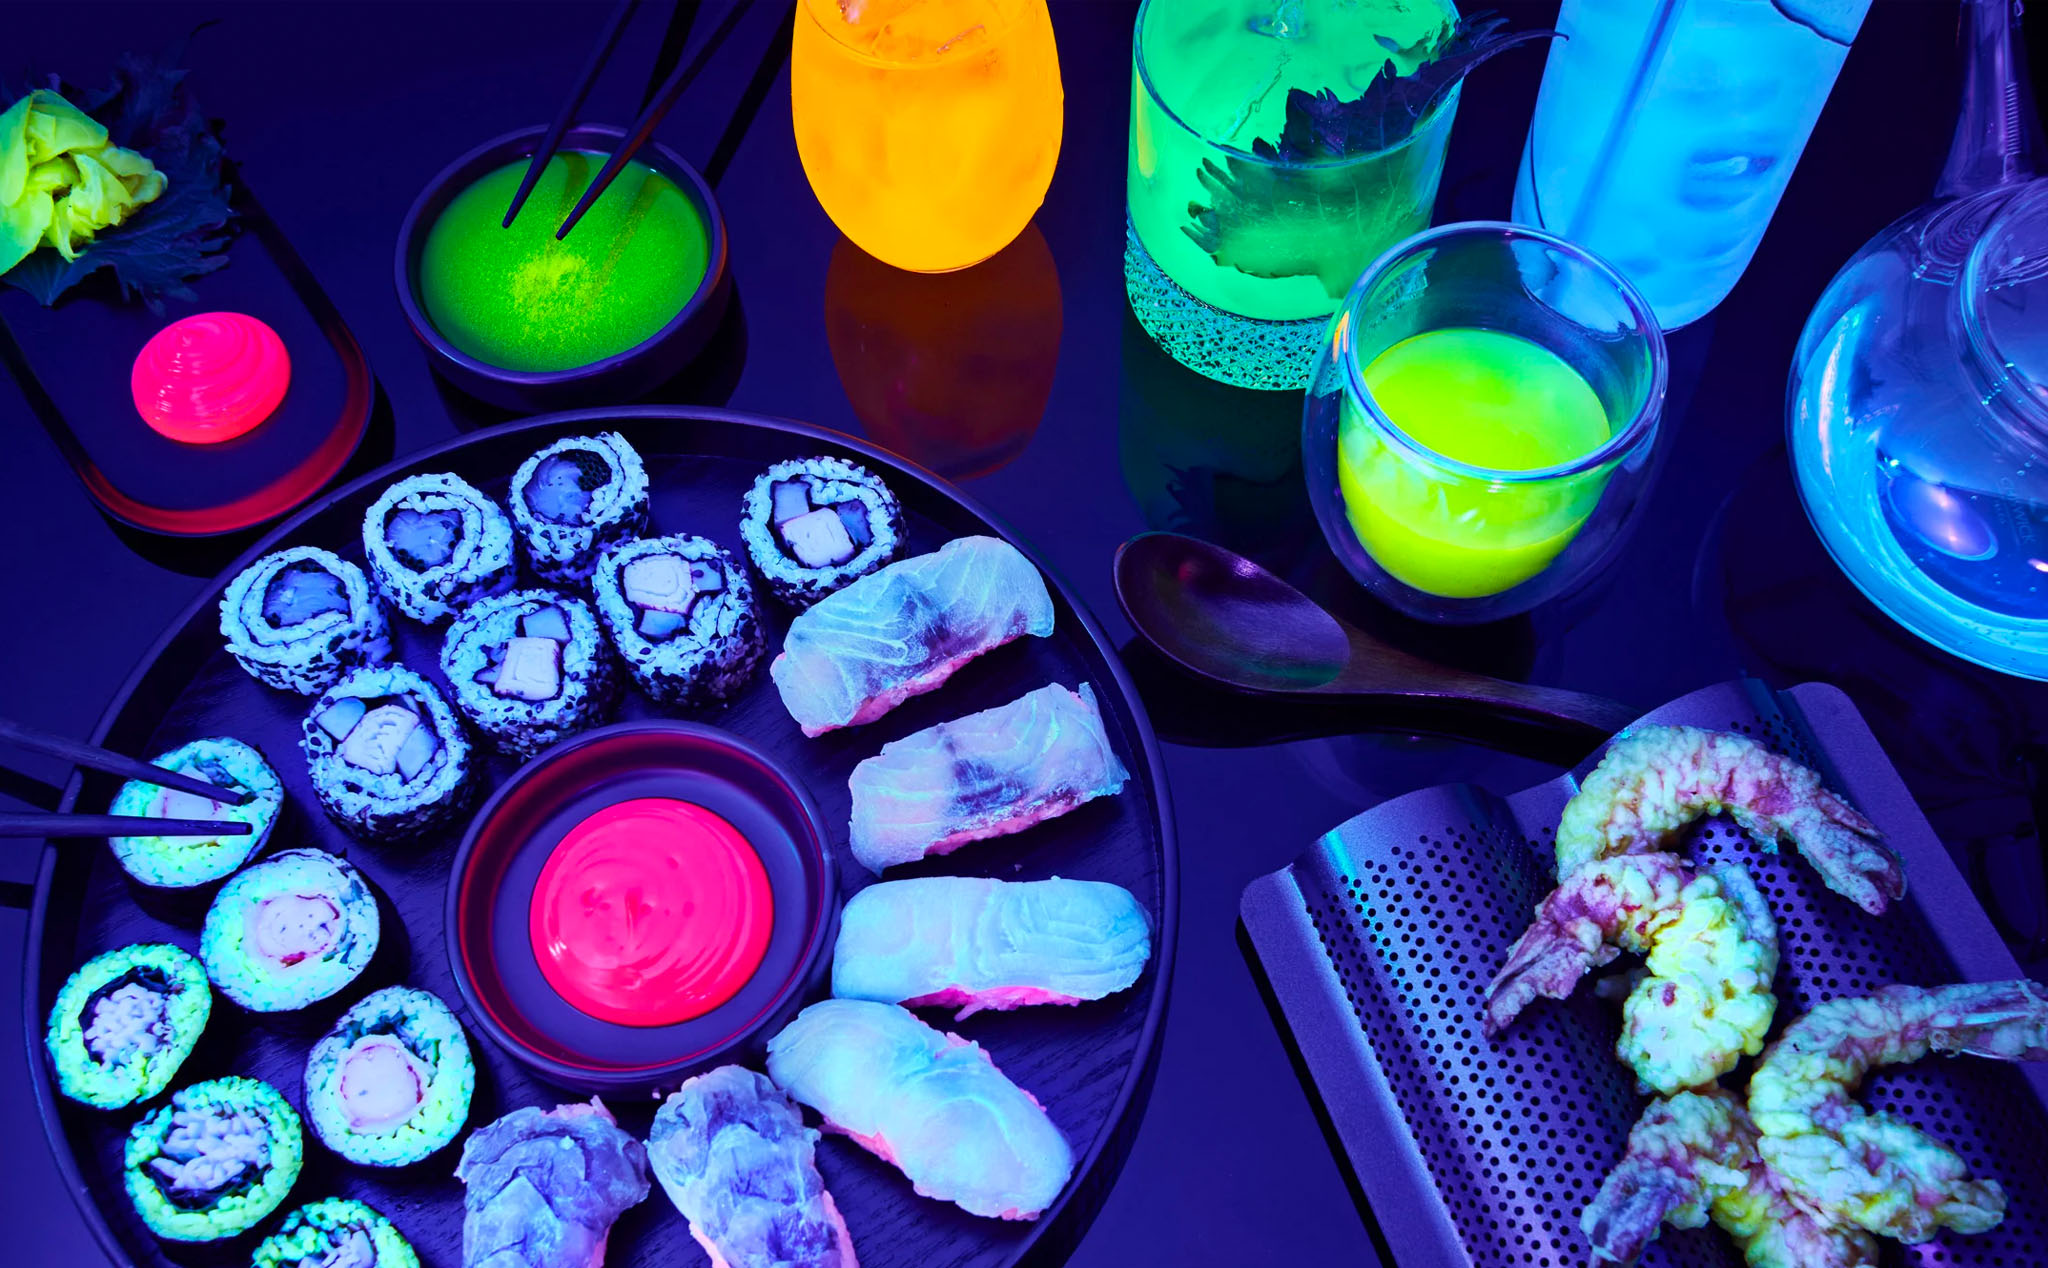 "Glow-in-the-Dark Sushi": Quán bar phục vụ các món sushi và cocktail phát sáng